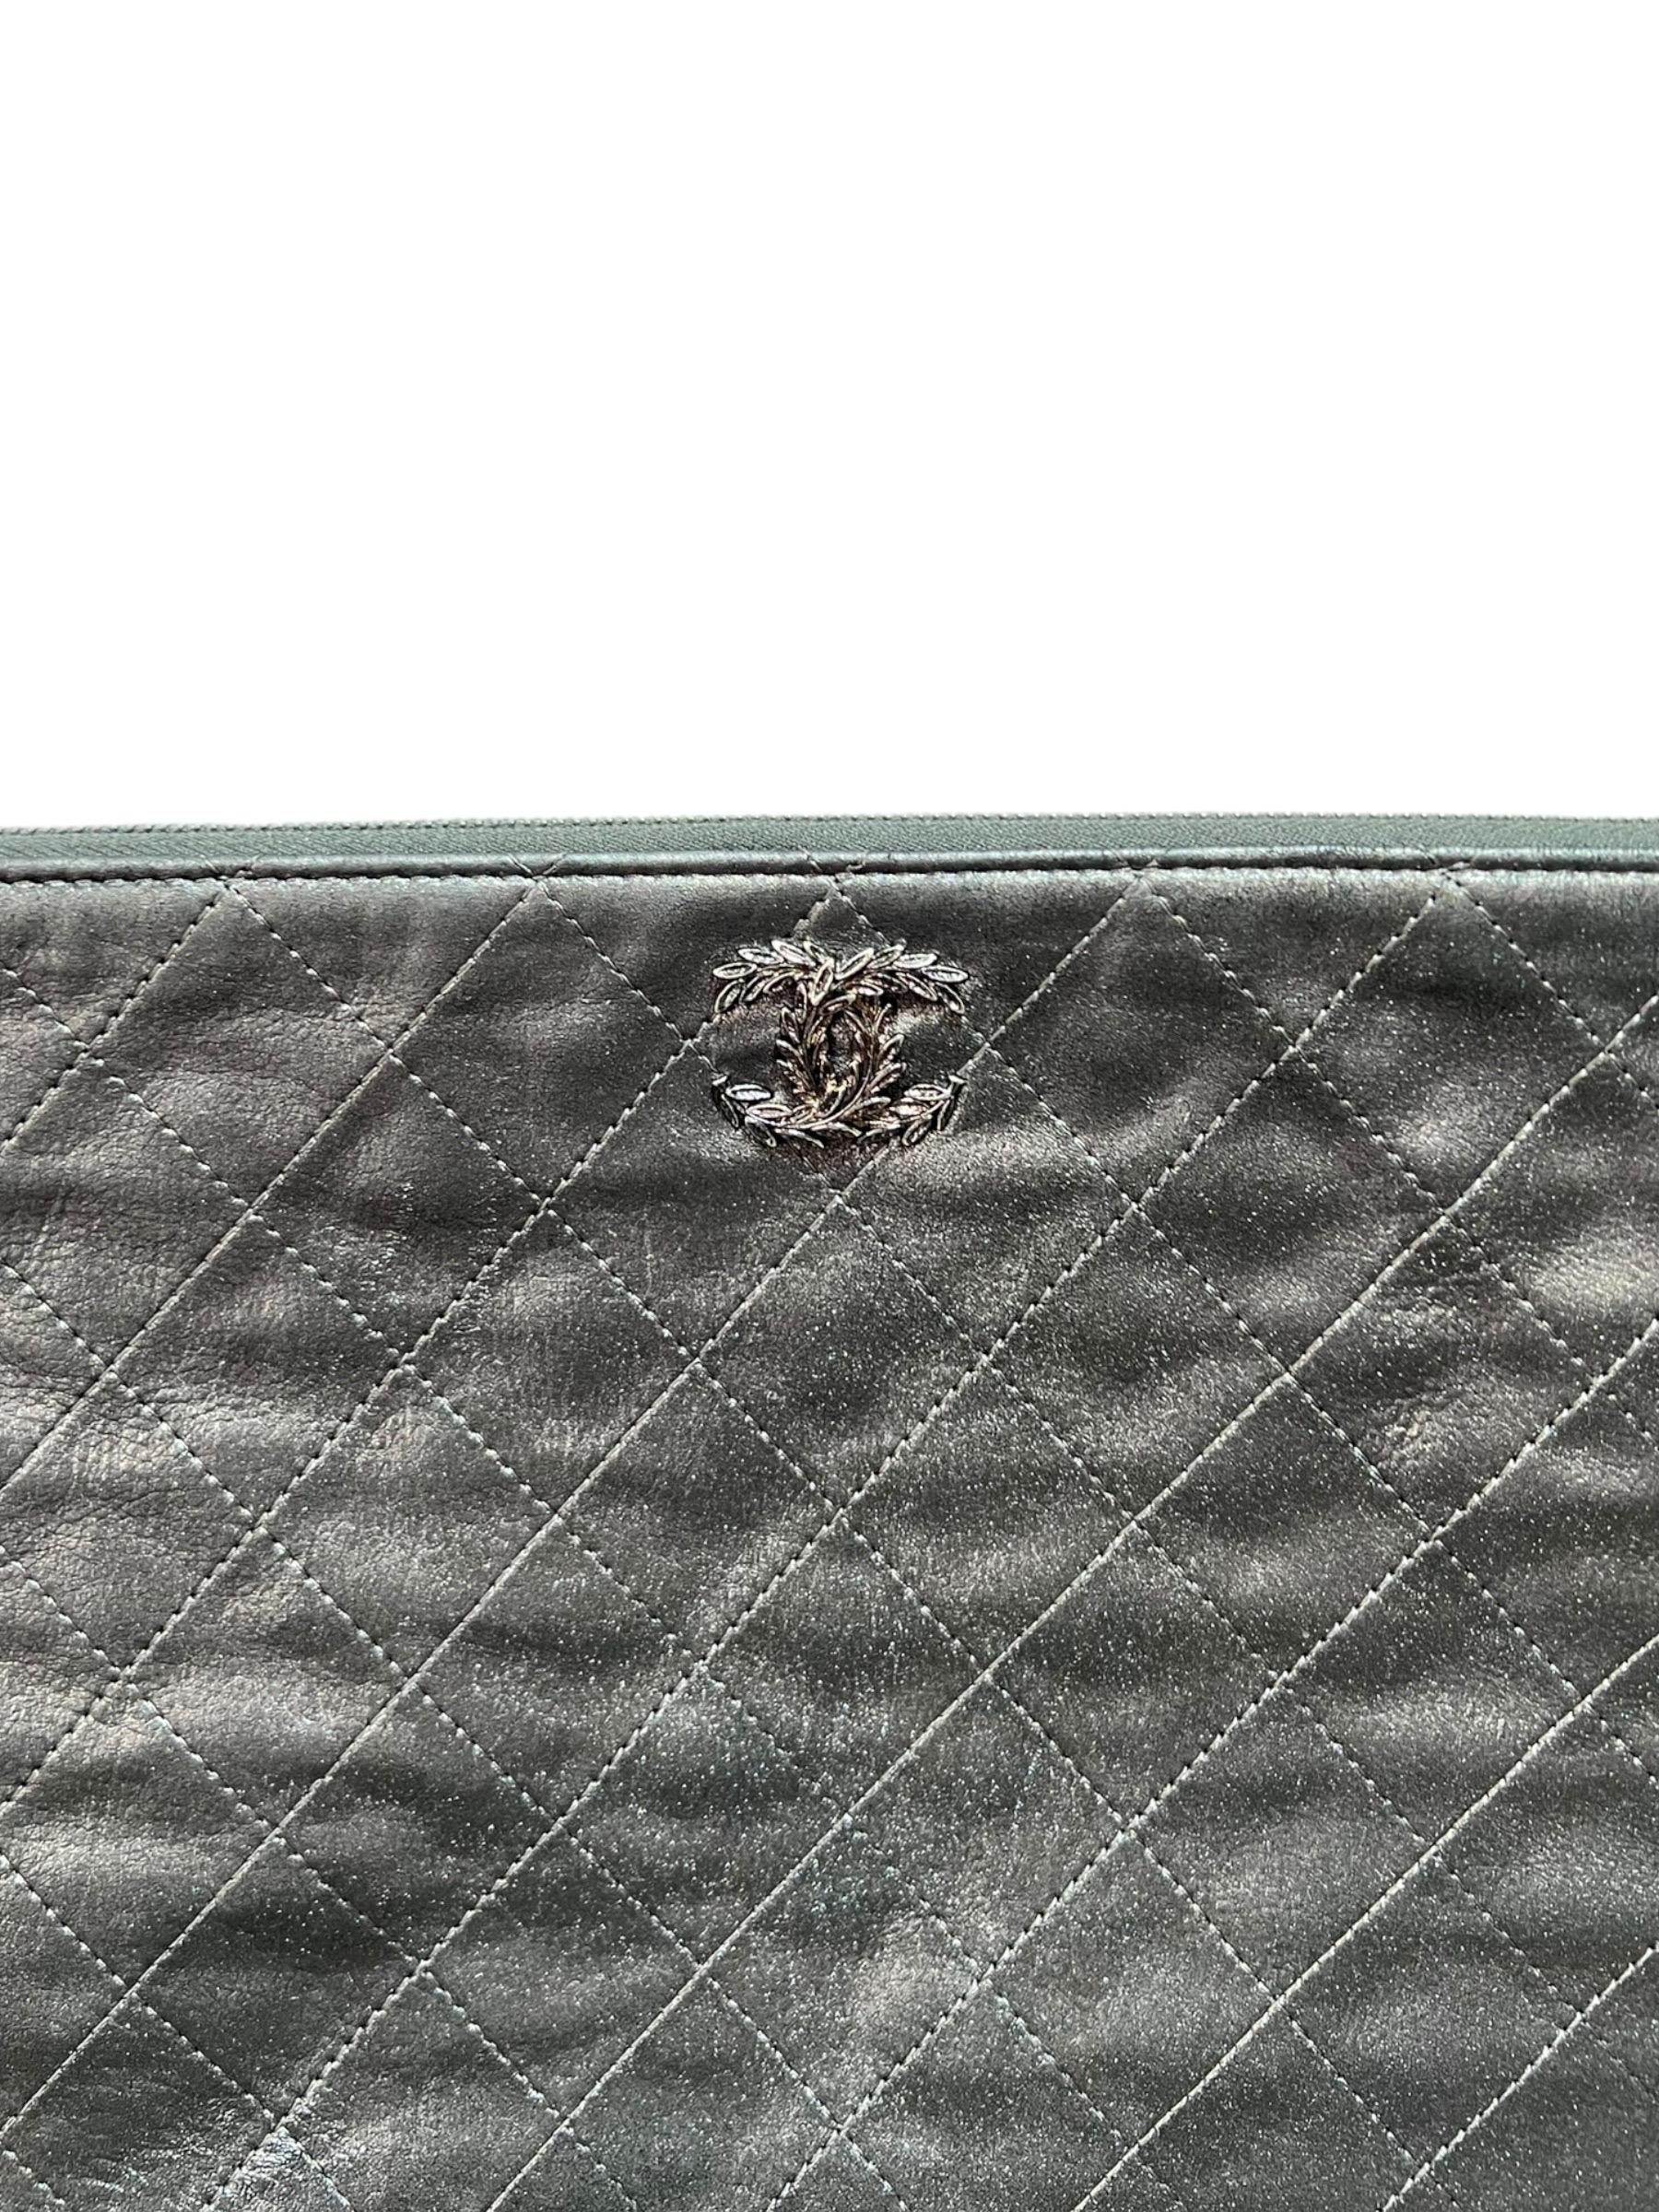 Clutch firmata Chanel, modello Flower, realizzata in pelle grigio satinato con hardware argentati. Dotata di una chiusura superiore a zip, internamente rivestita in tessuto grigio chiaro, capiente per l’essenziale. Presenta il classico logo “CC”